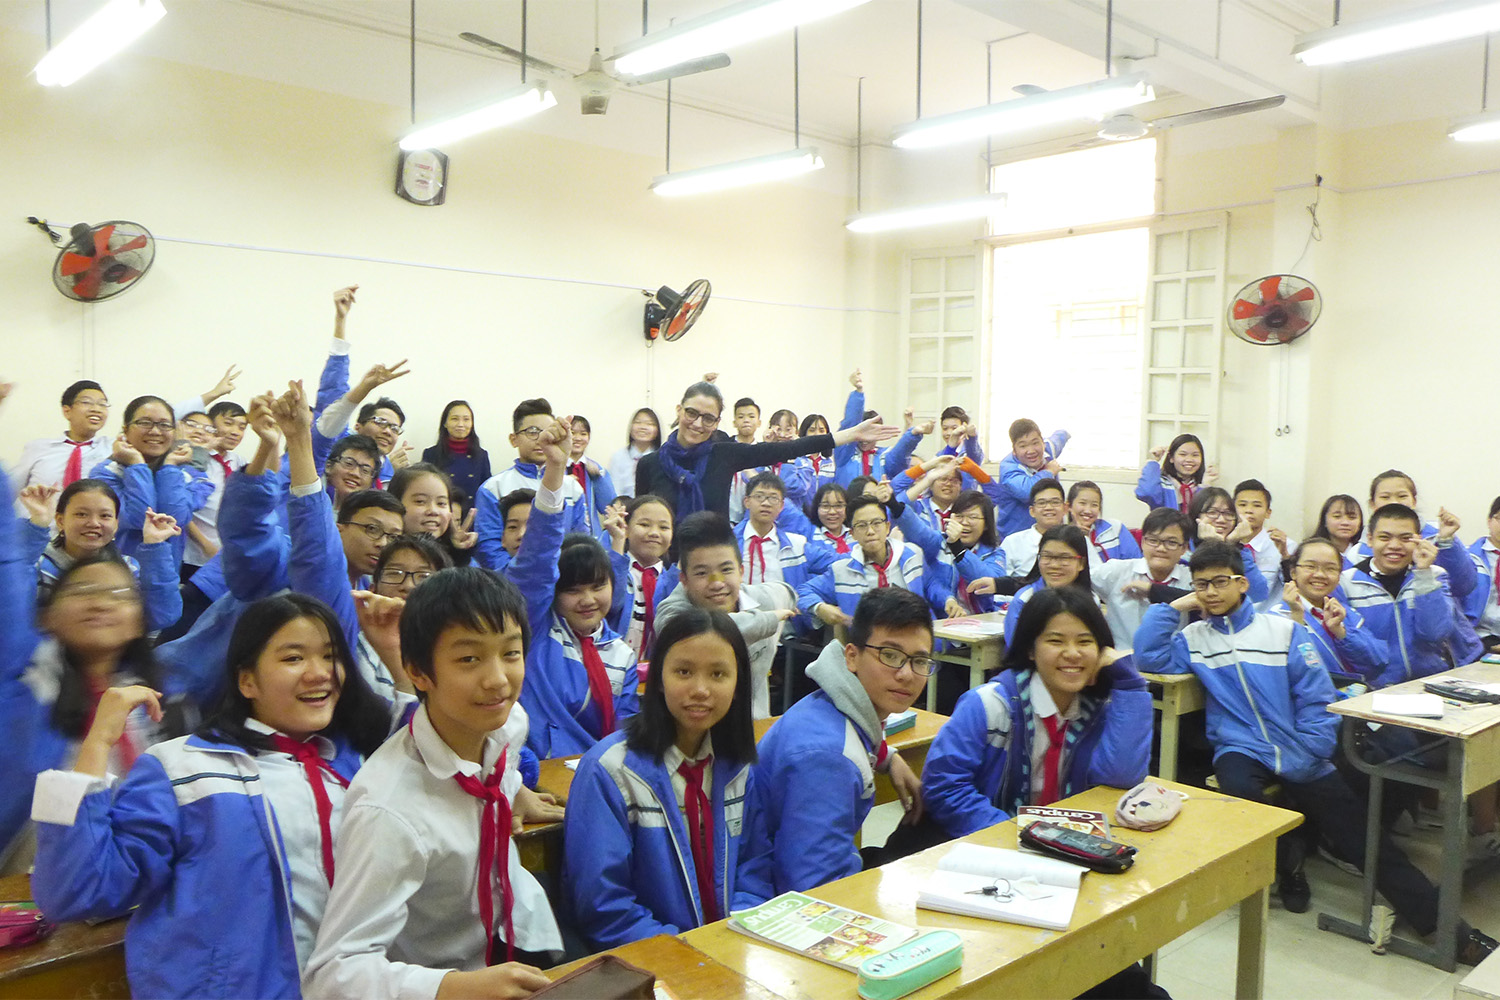 Moi avec une classe du collège Hong Bang. Ici, on adore prendre des photos. Et on rigole bien pendant les pauses !